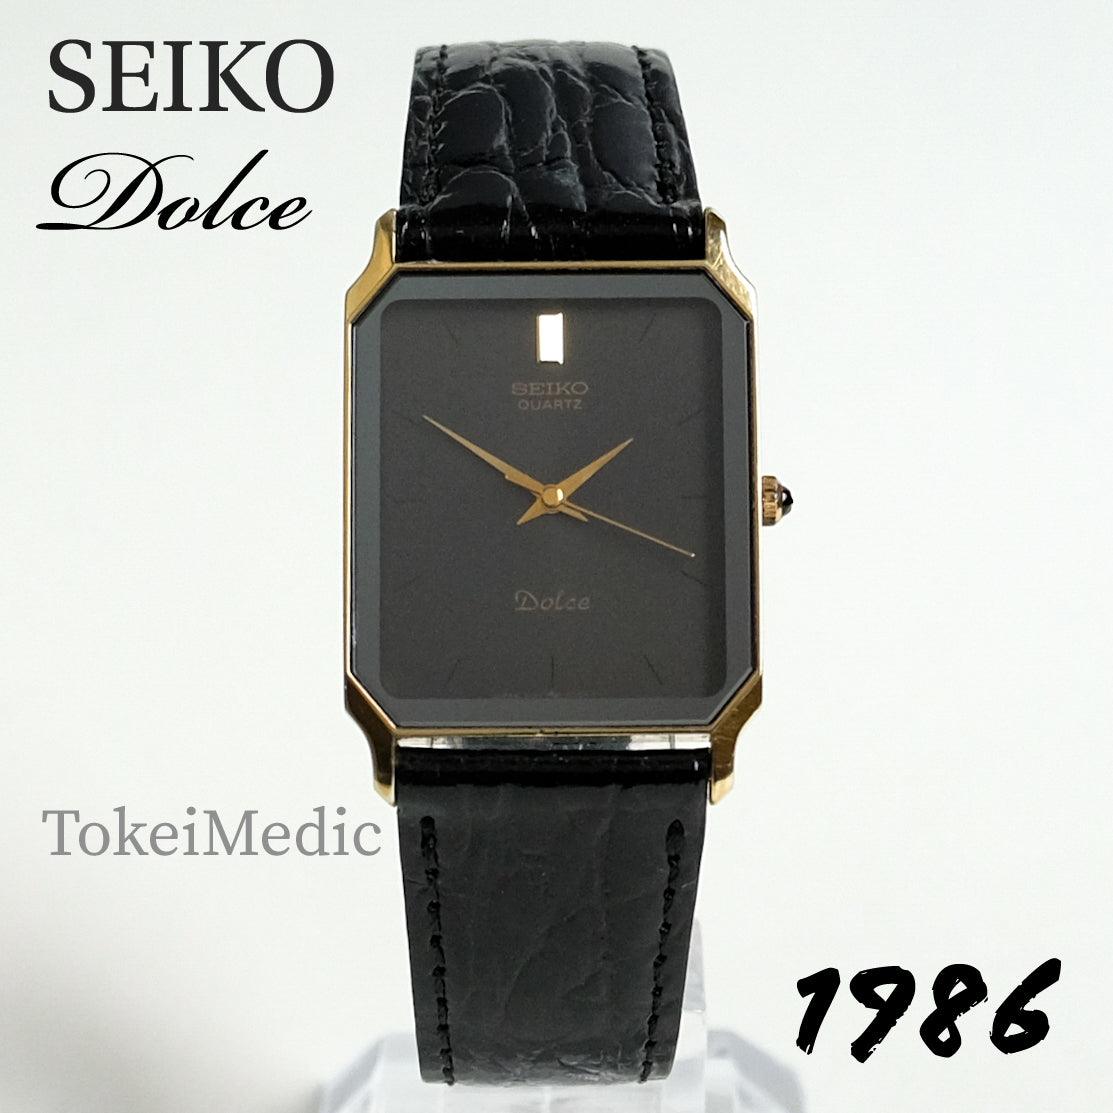 1986 Seiko Dolce 7731-5220